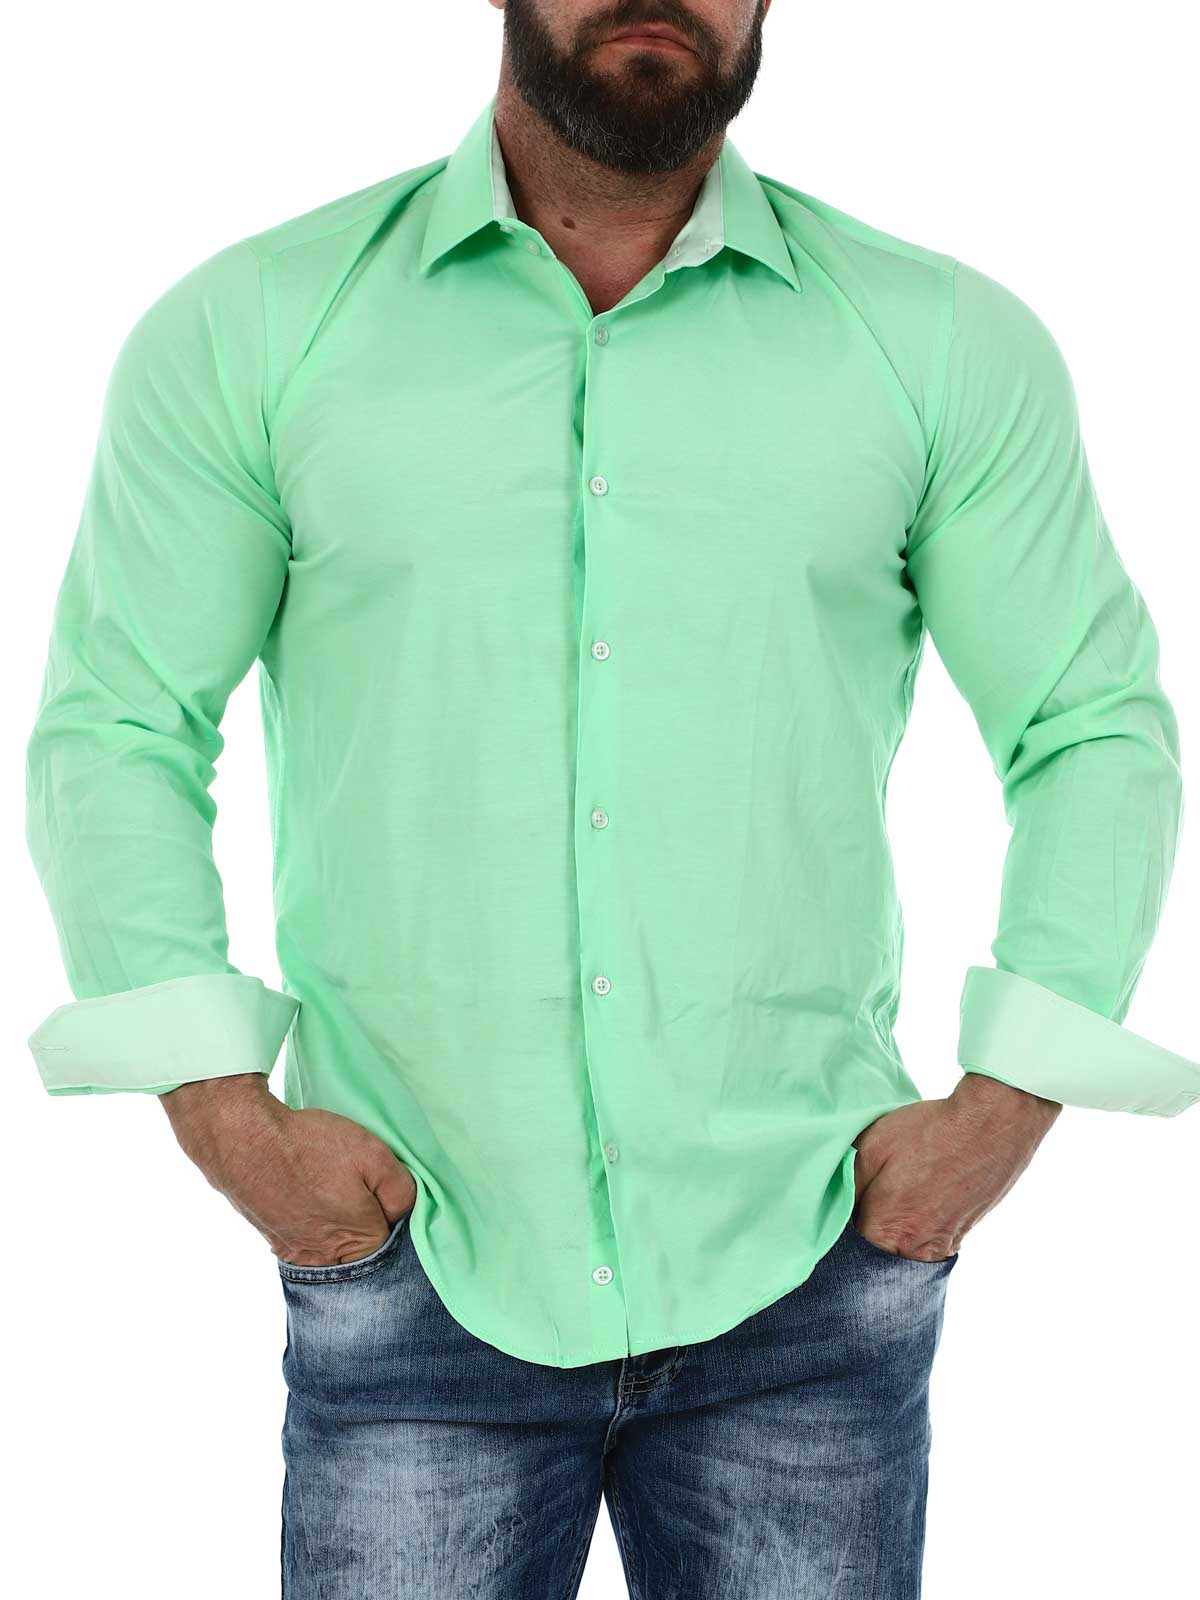 Cassian Skjorte - Light green_1.JPG